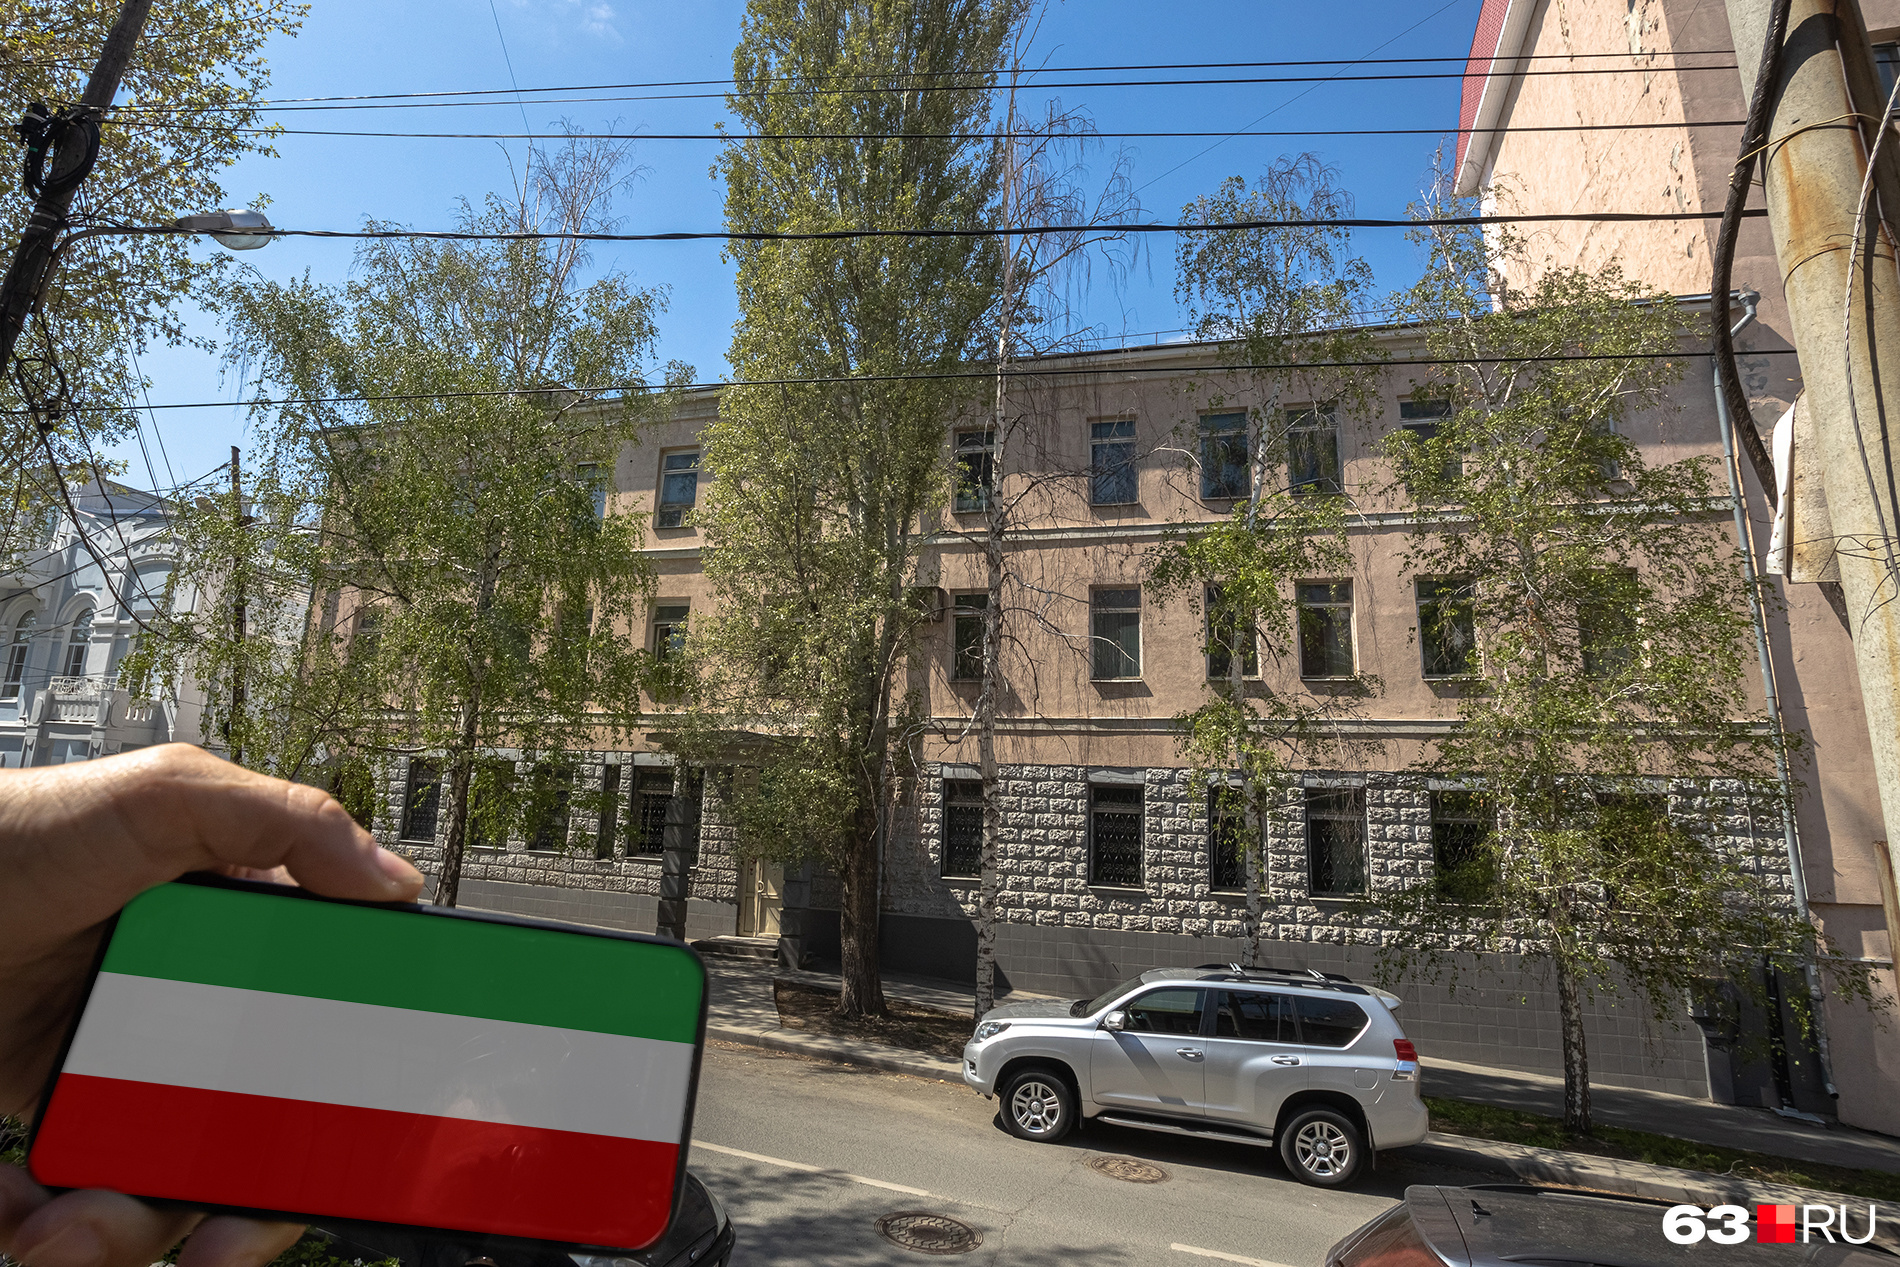 Степана <nobr class="_">Разина, 130</nobr> — посольство Ирана